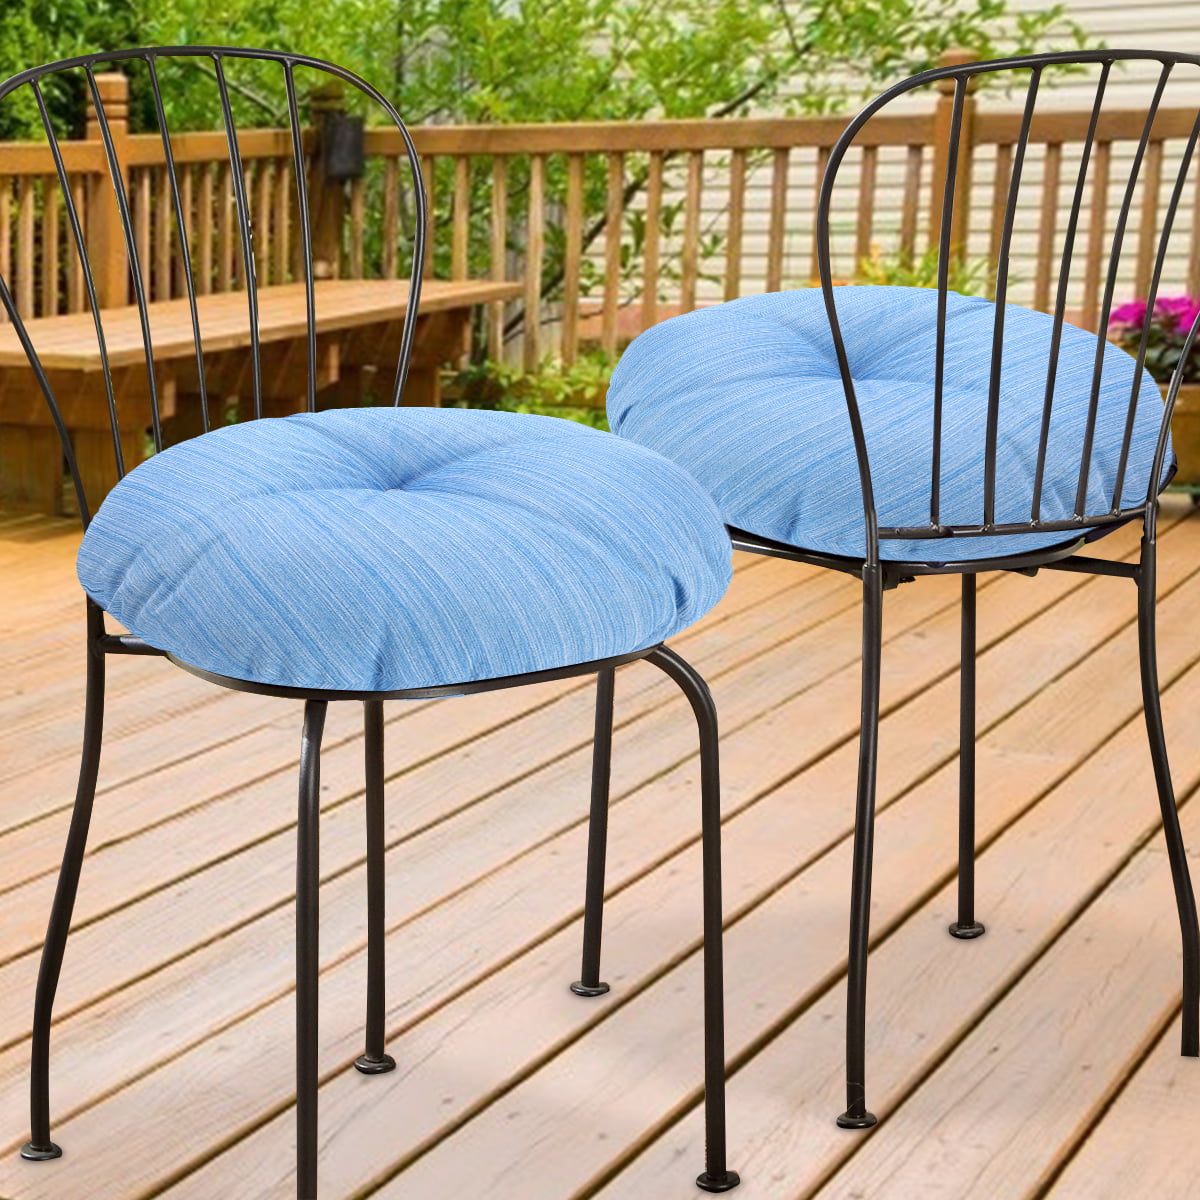 Plain Round Seat Pad Outdoor Garden Dining Kitchen Chair Furniture Cushion 37cm 